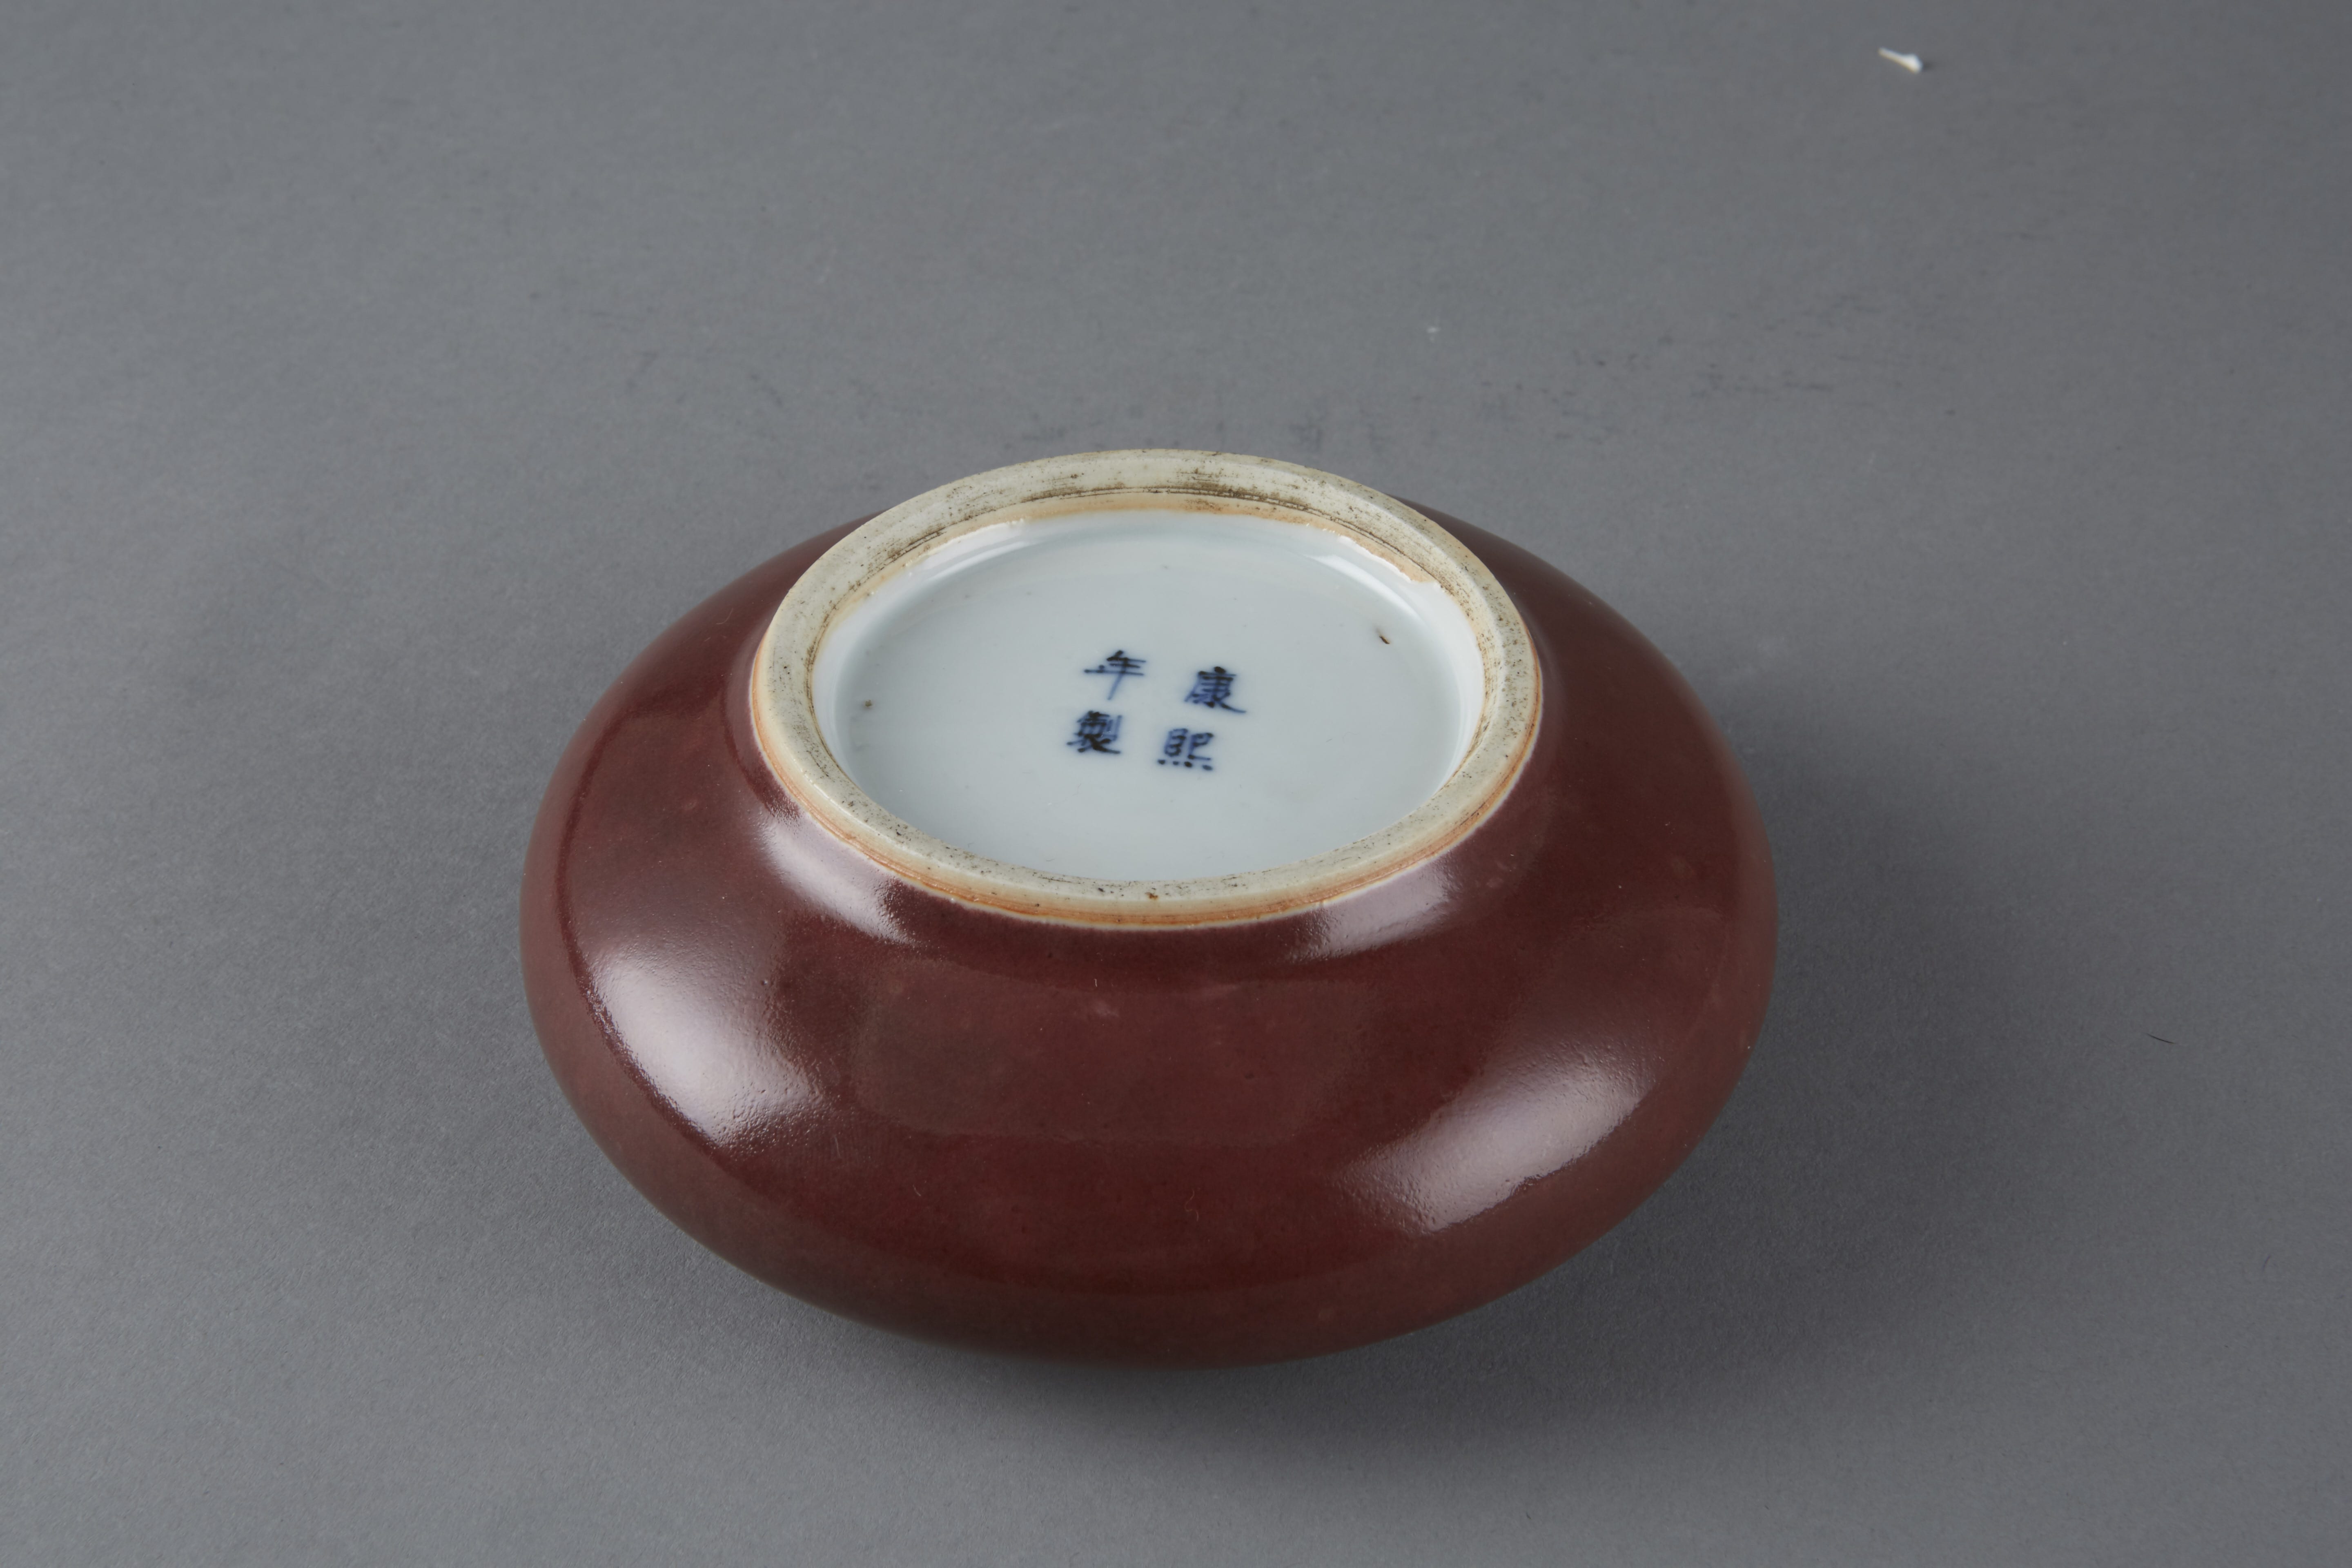 Lot 074: Chinese 19th Century Oxblood Porcelain Brush Washer Bowl Bearing a Kangxi (1662-1744) Blue Underglaze Mark